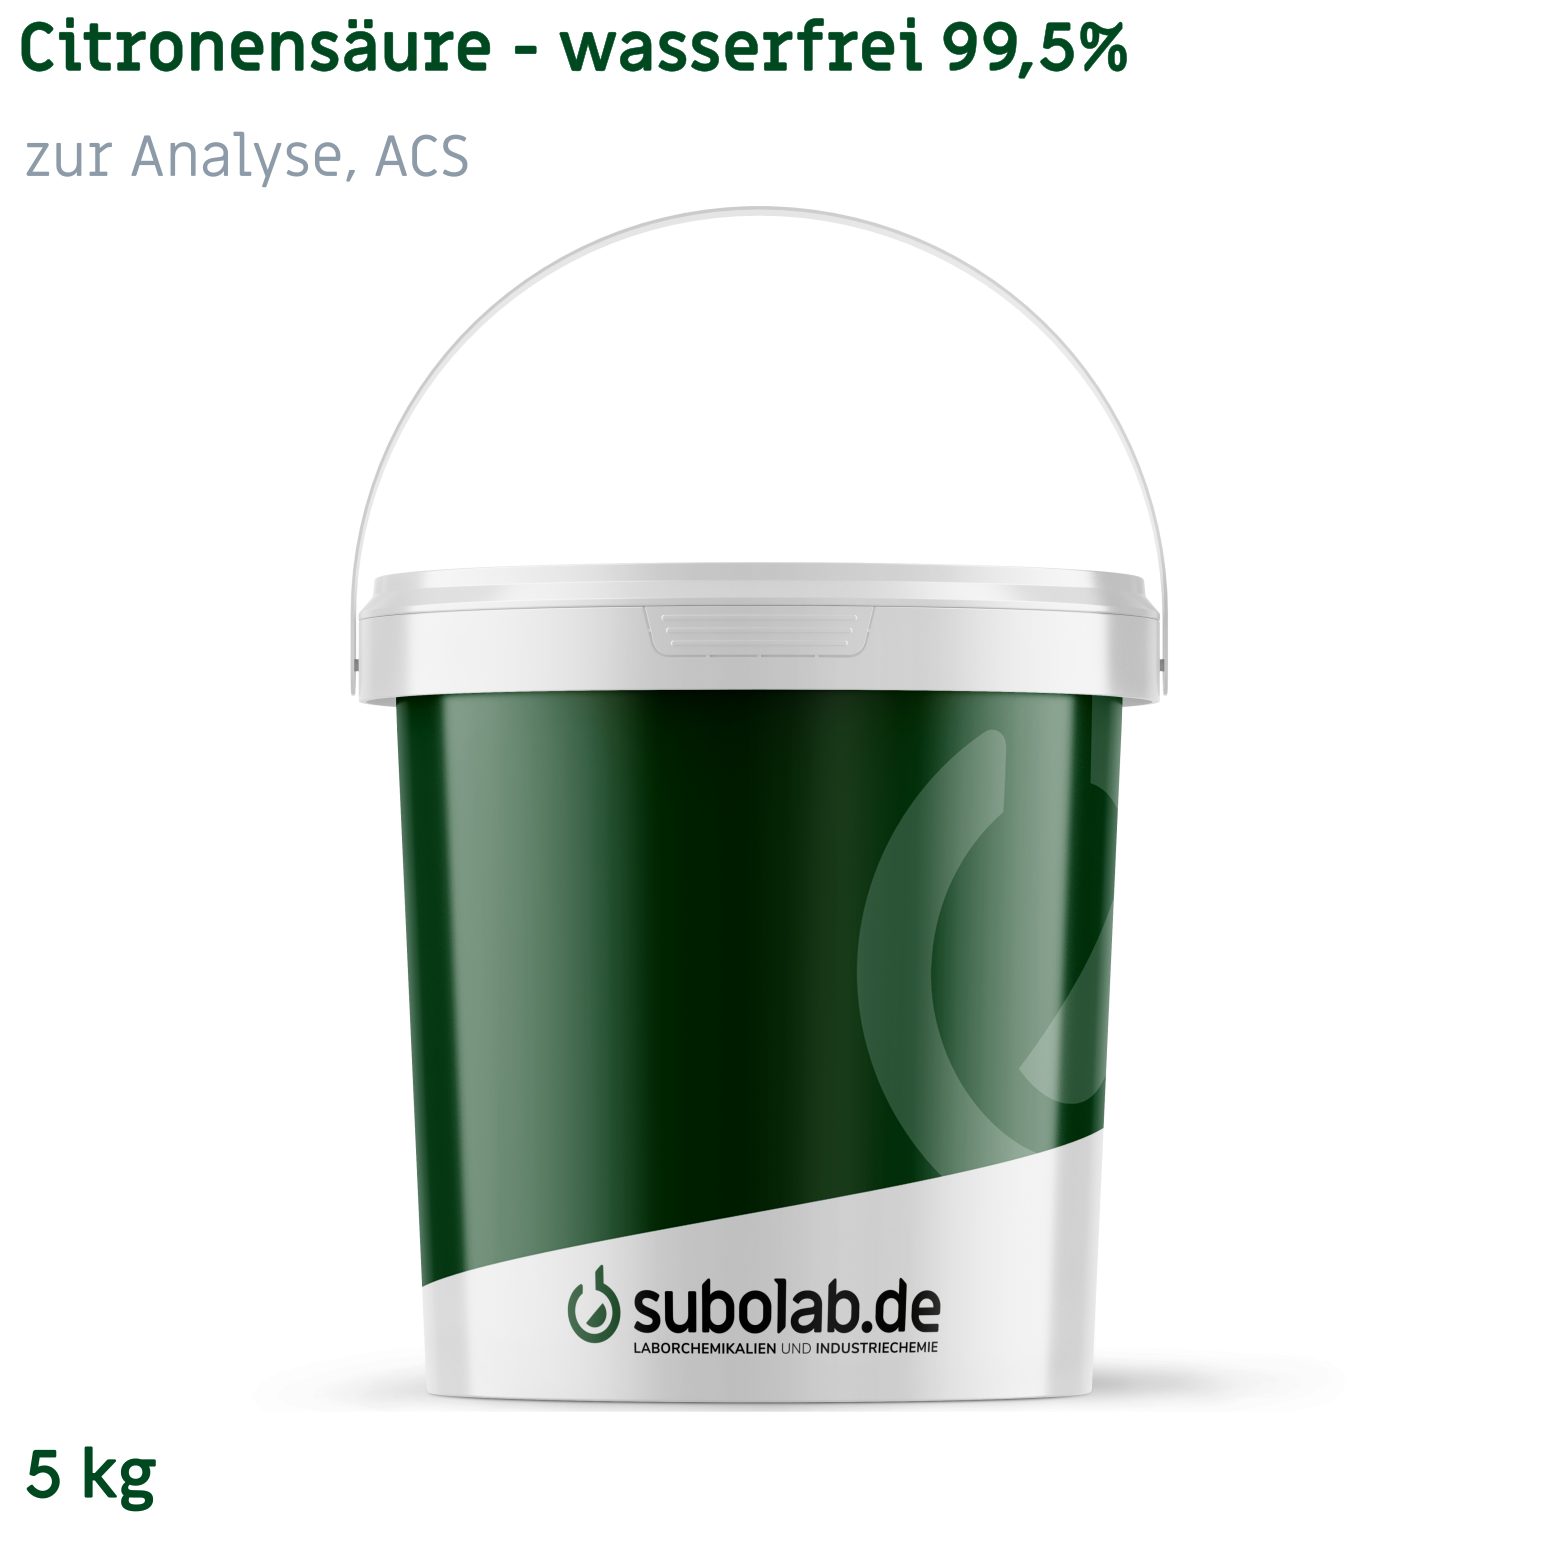 Bild von Citronensäure - wasserfrei 99,5% zur Analyse, ACS (5 kg)